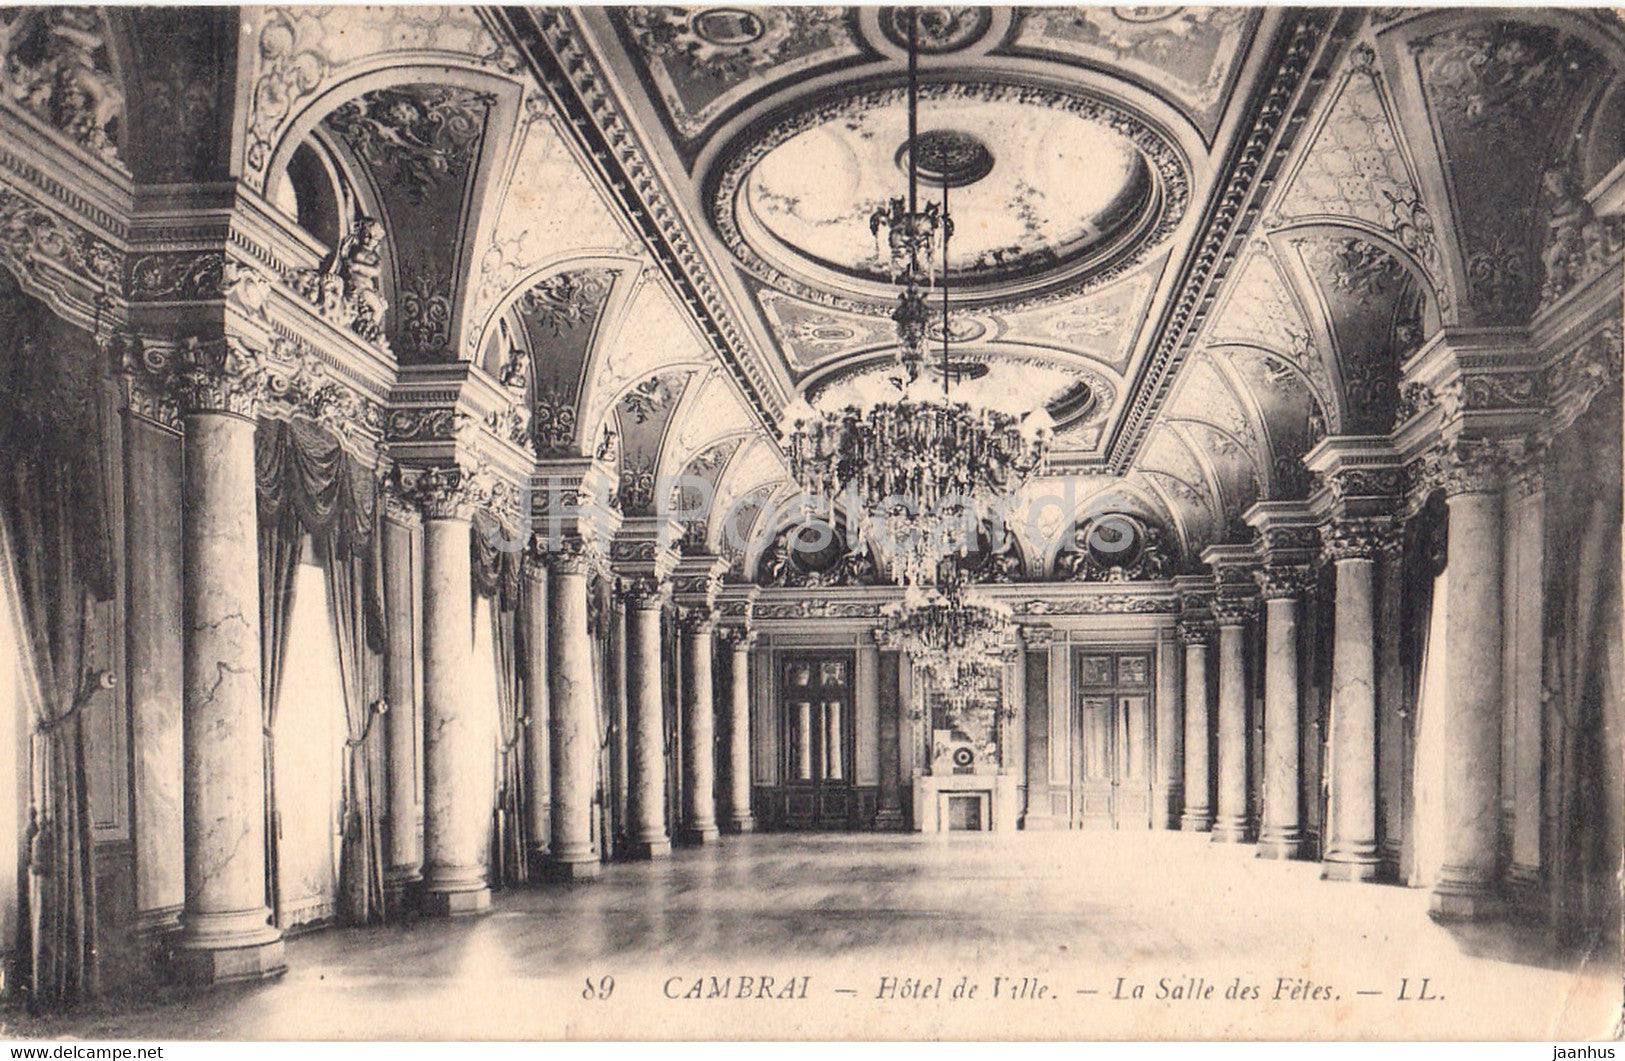 Cambrai - Hotel de Ville - La Salle des Fetes - 89 - old postcard - France - used - JH Postcards